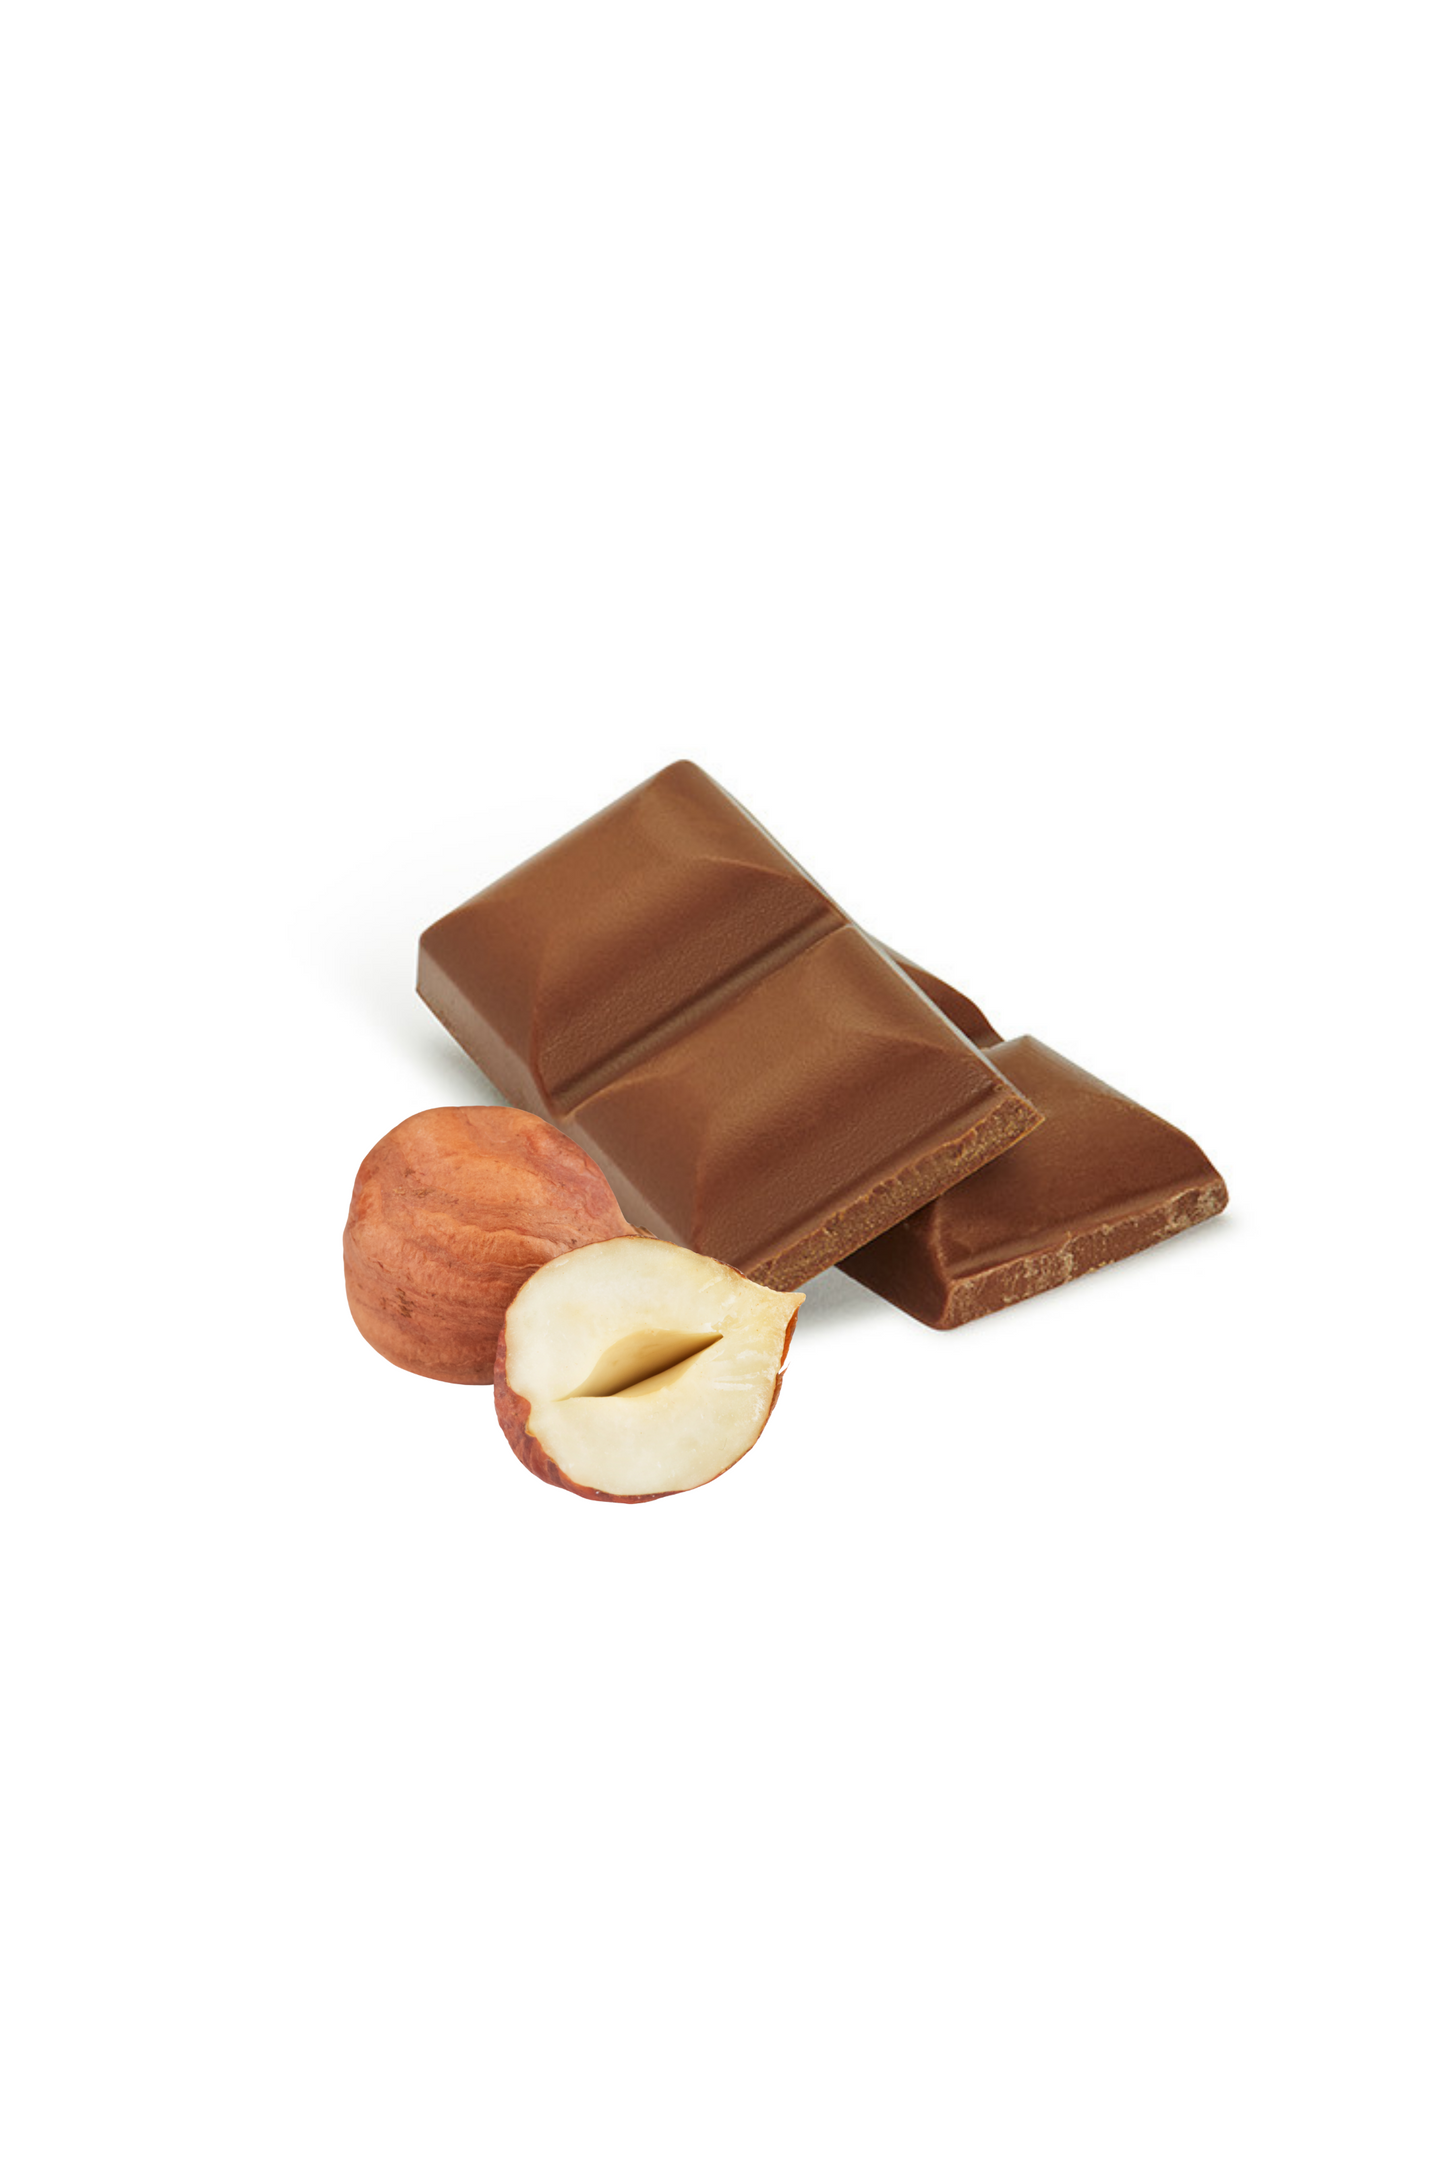 Vollmilch-Schokolade mit Haselnuss, ohne Zuckerzusatz. 45% Kakaoanteil